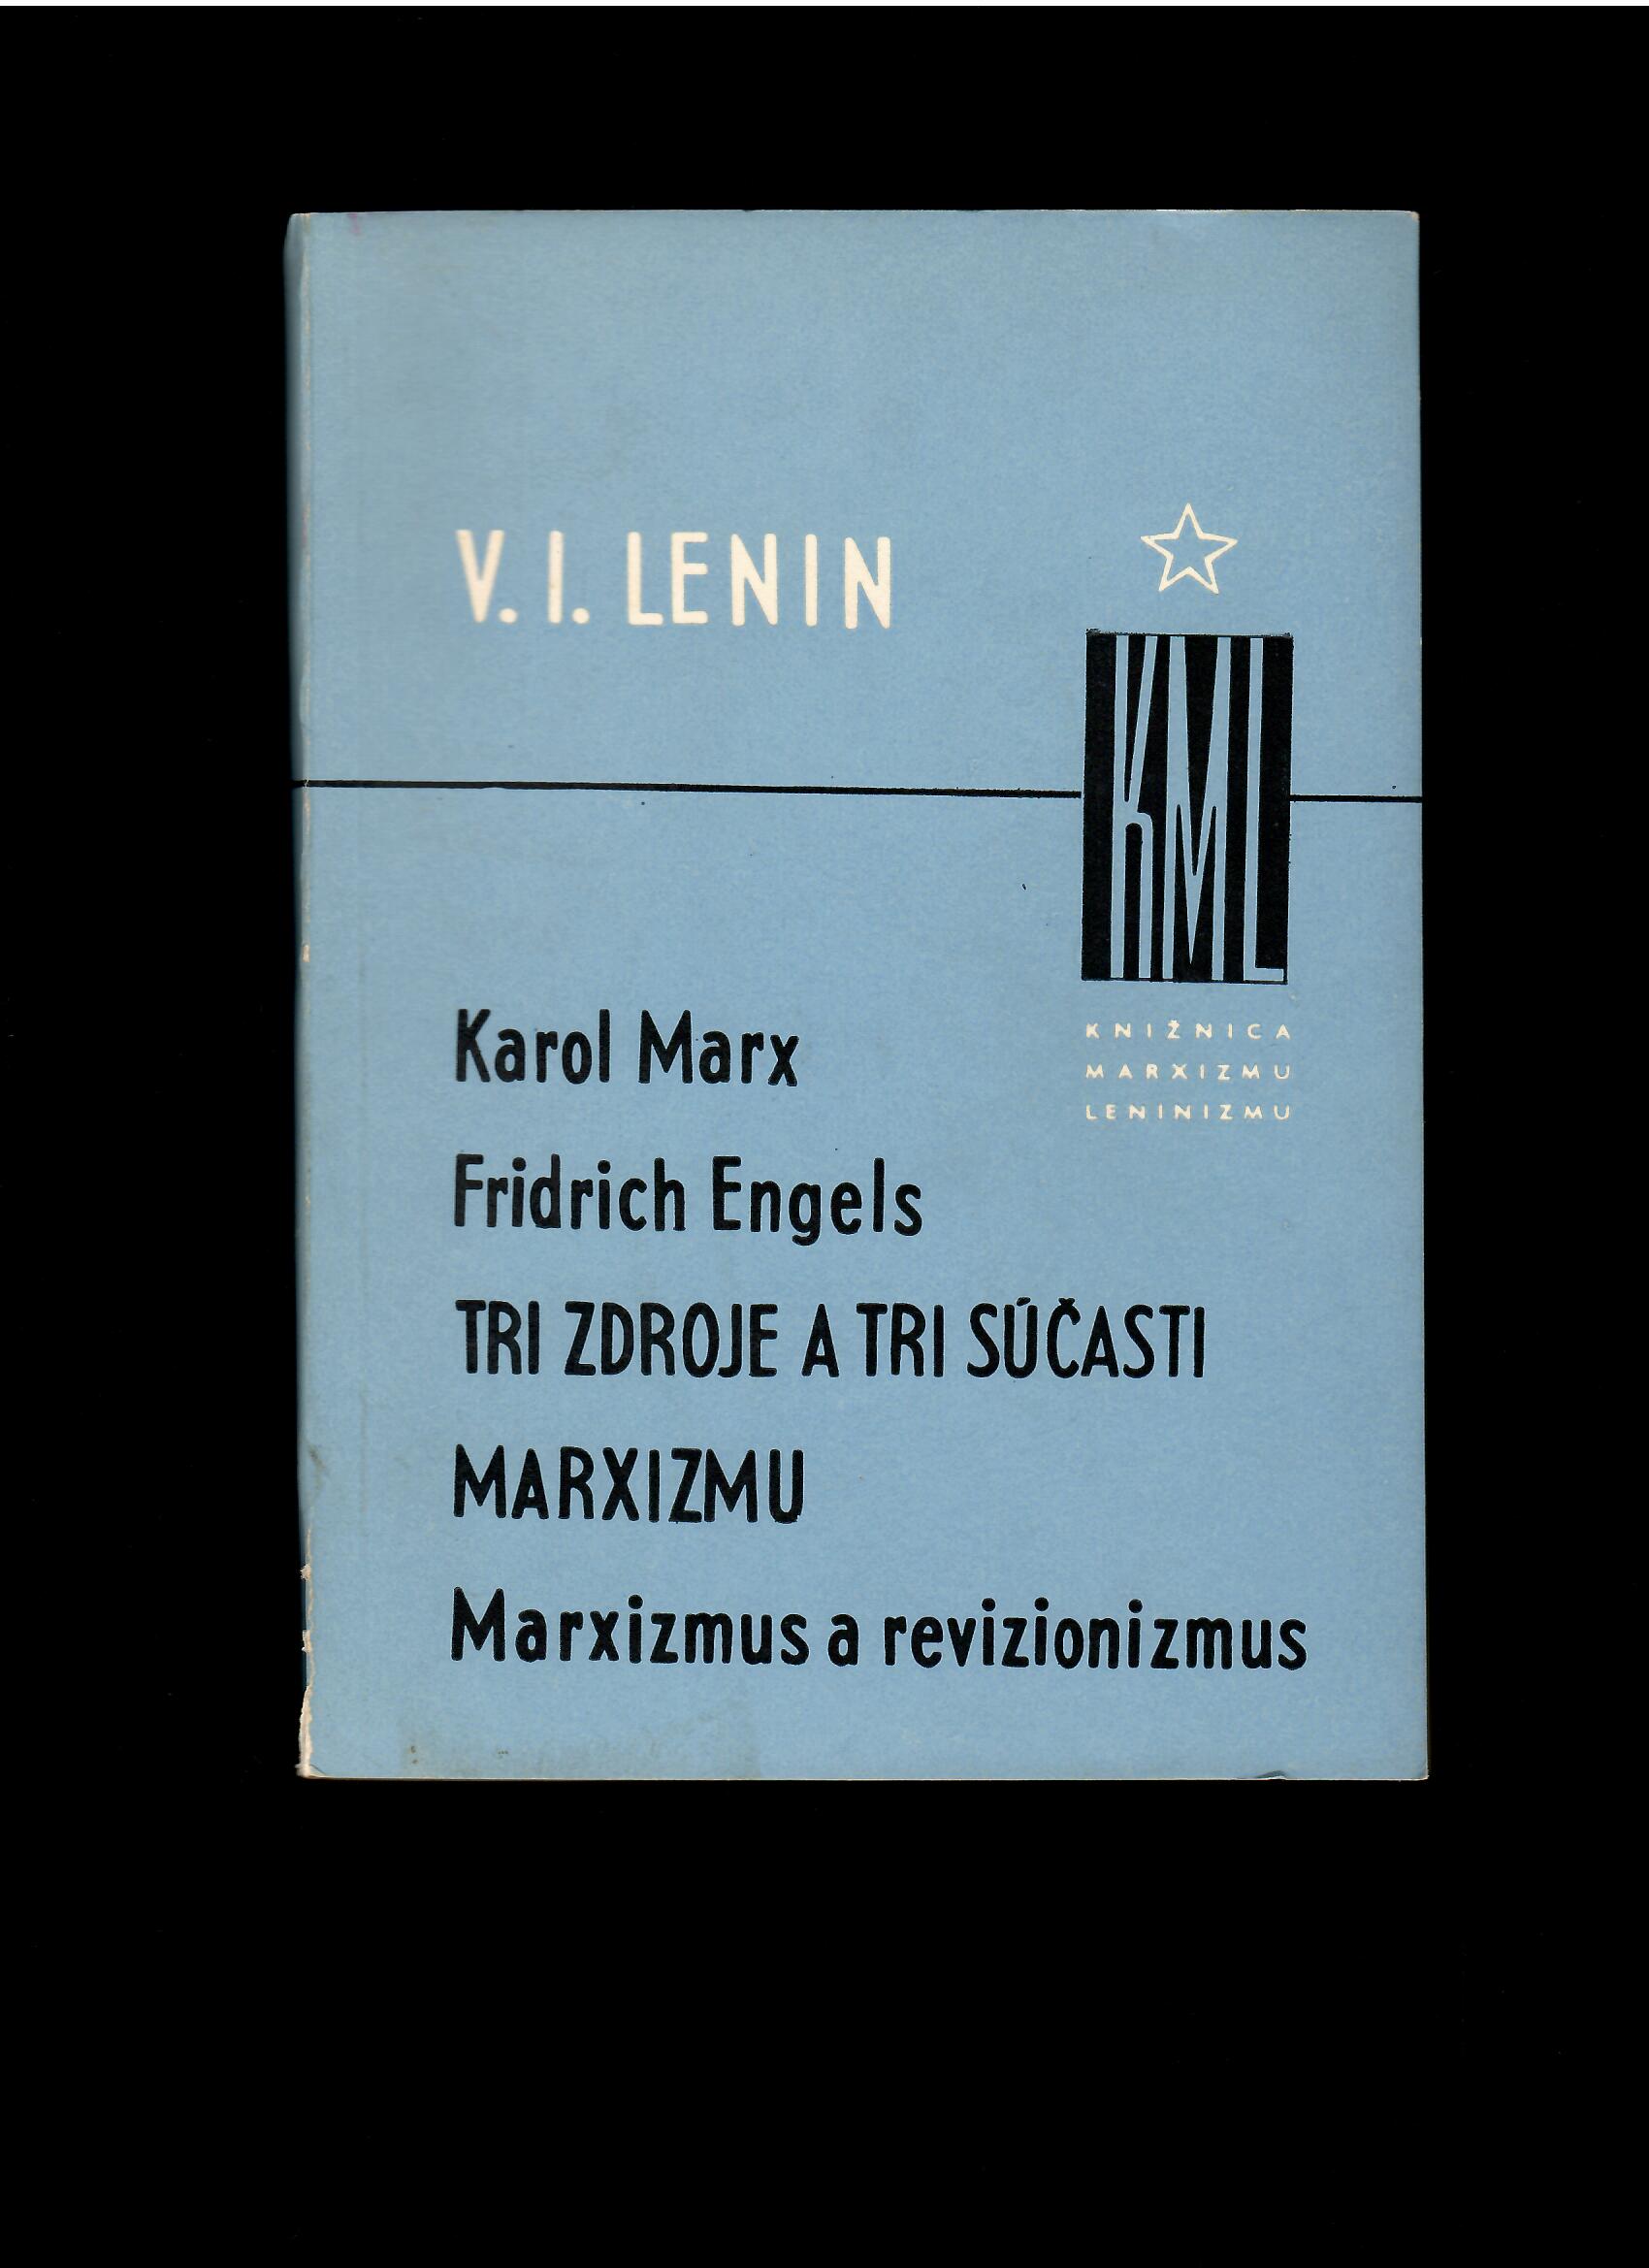 V. I. Lenin: Karol Marx, Fridrich Engels, Tri zdroje a tri súčasti marxizmu